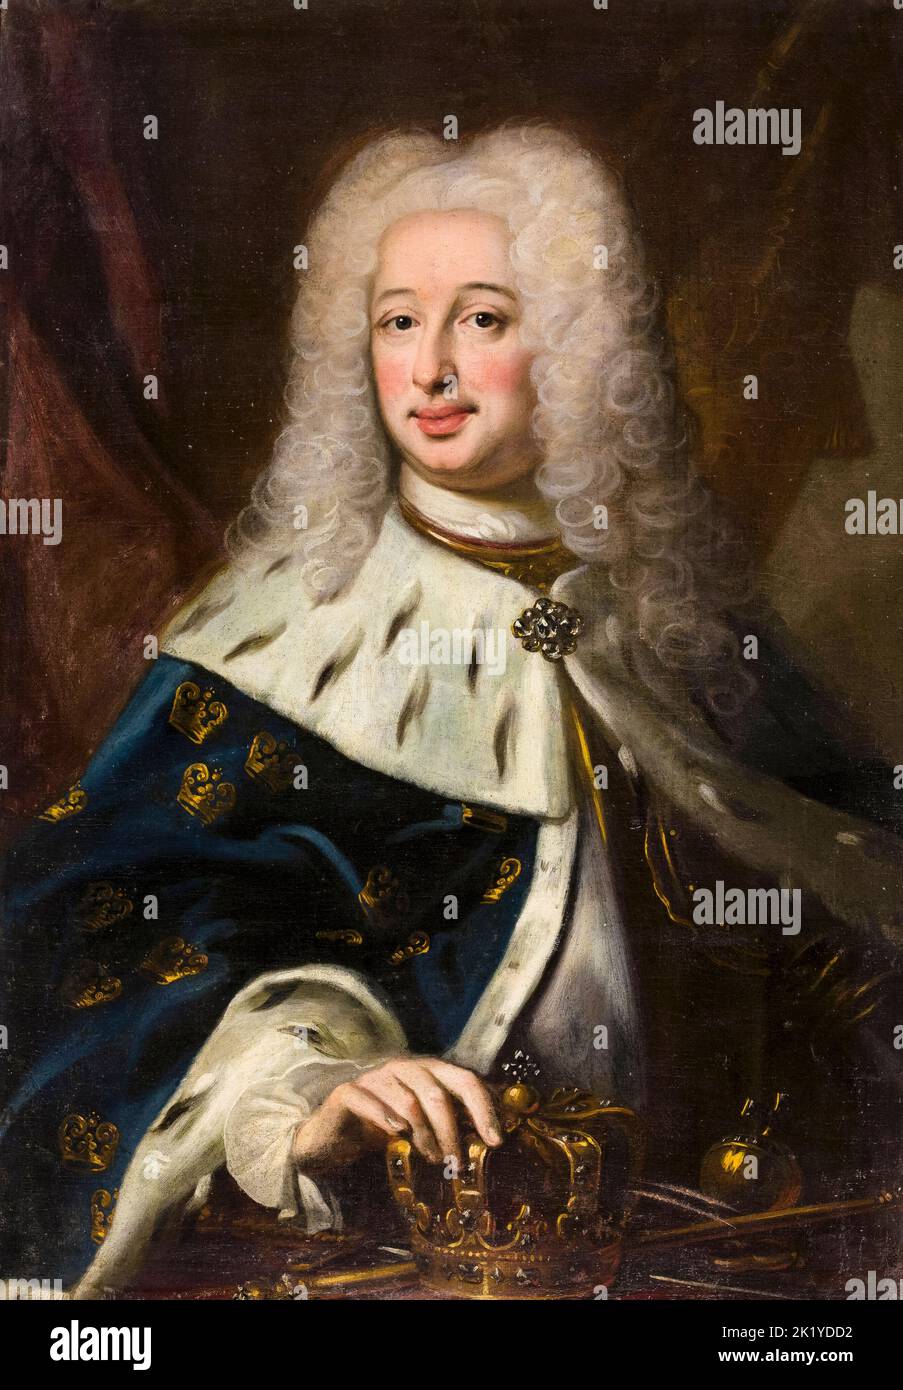 Frederick I (1676-1751), roi de Suède, portrait peint à l'huile sur toile par Georg Engelhardt Schröder, 1720-1729 Banque D'Images